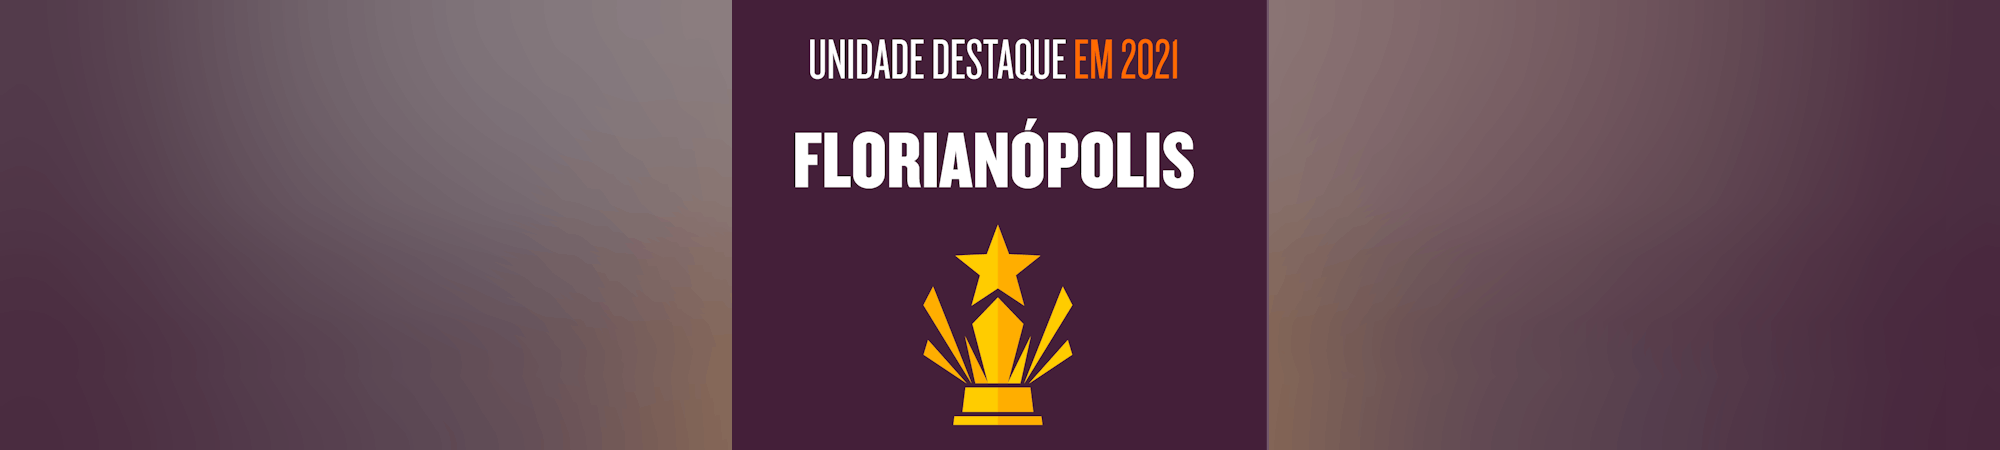 Florianópolis 1